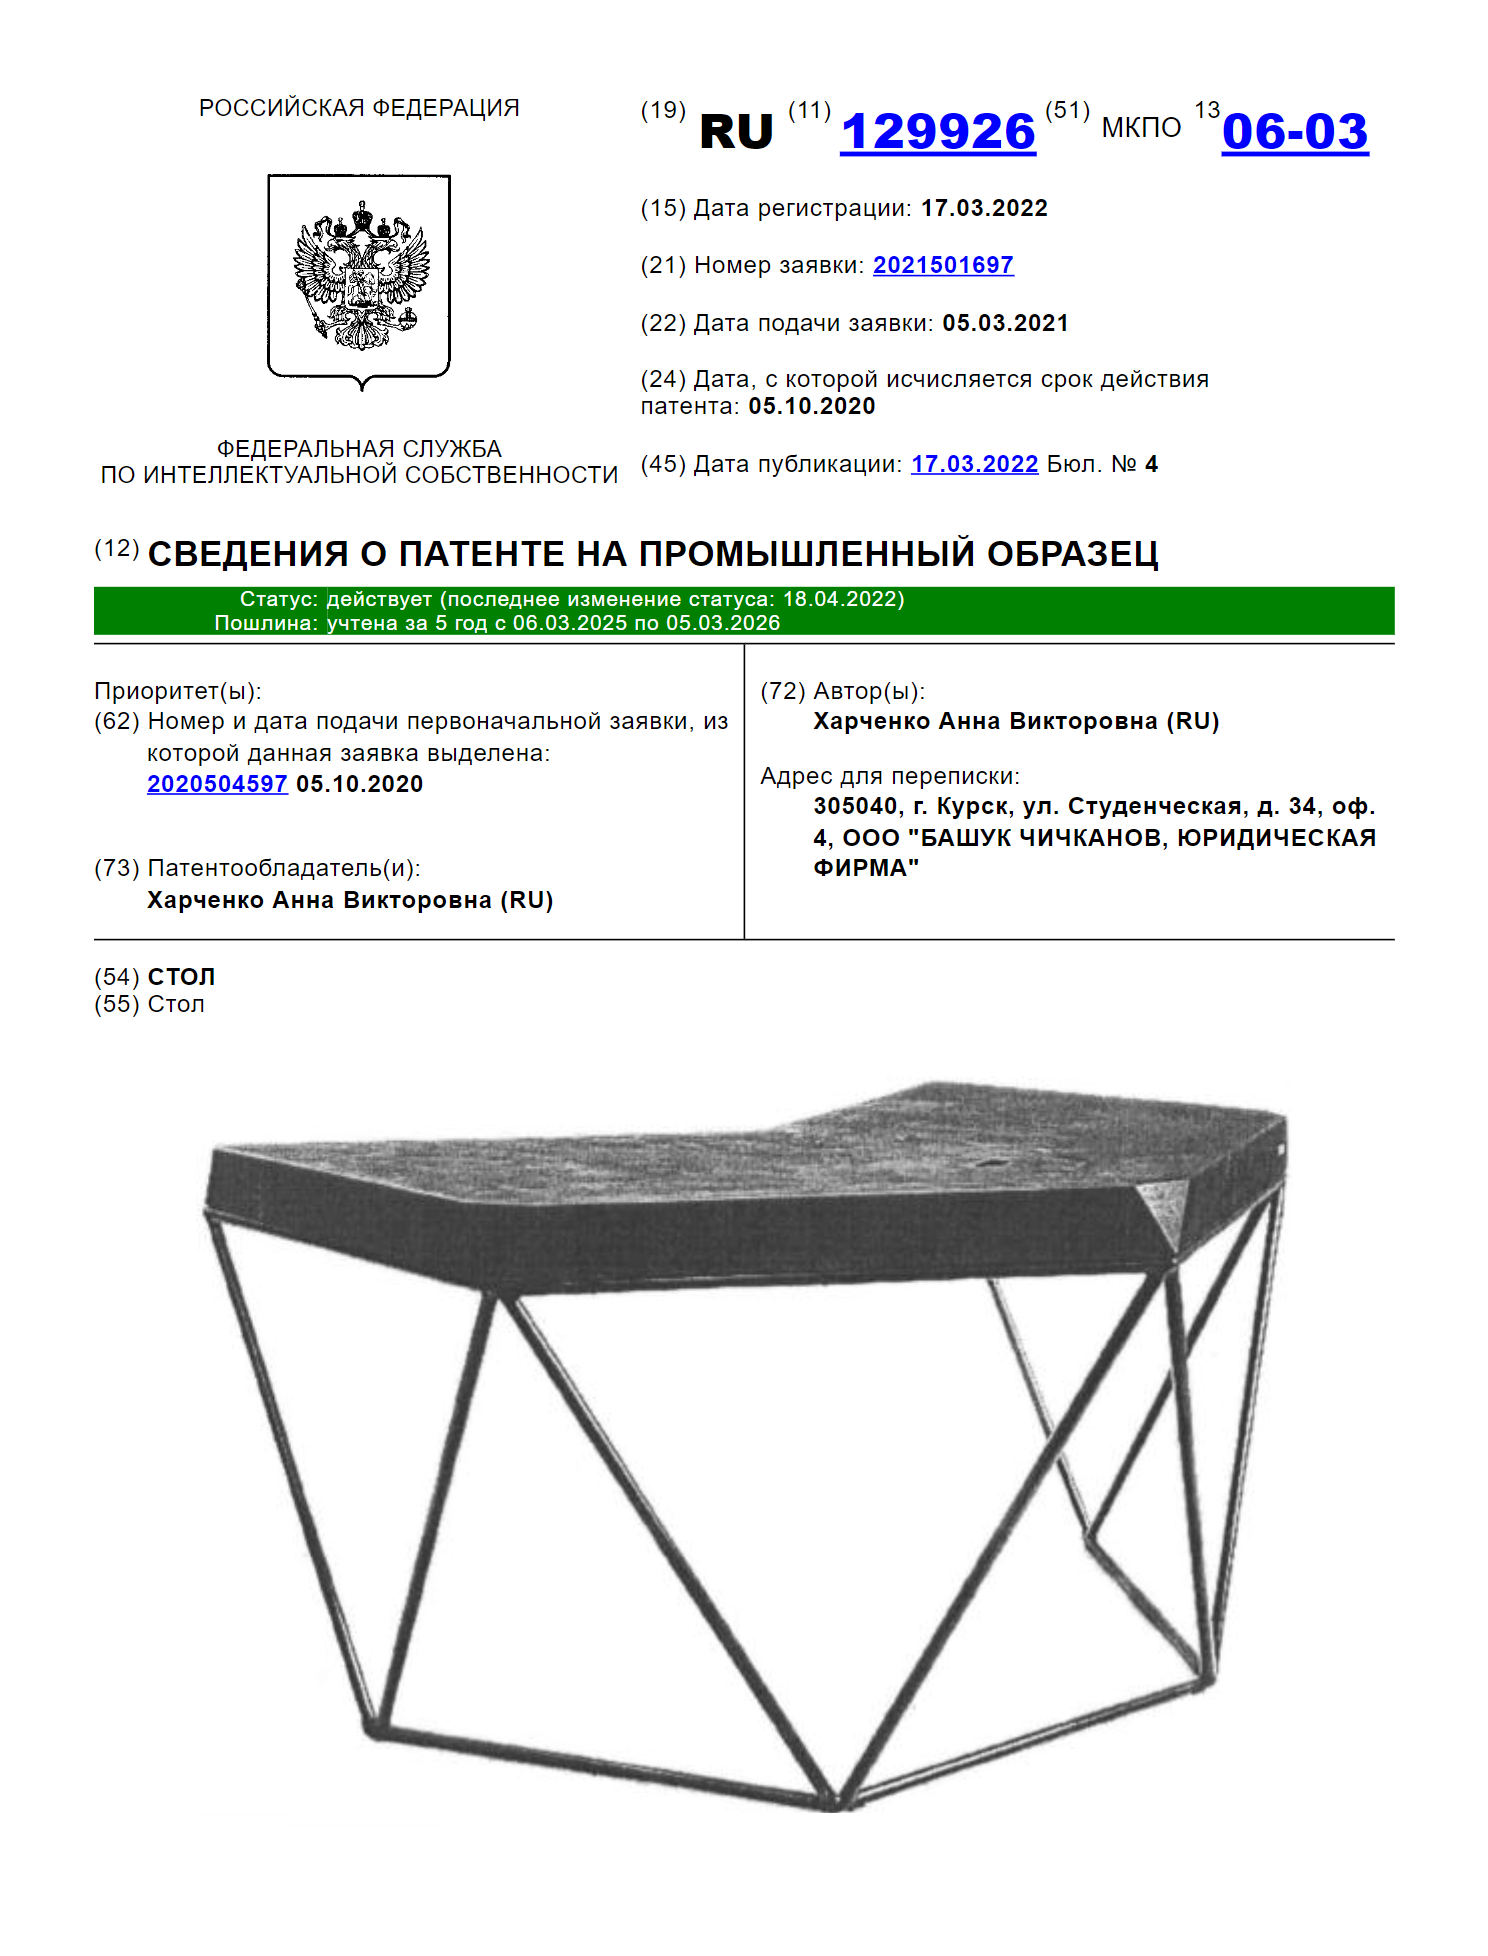 Несколько примеров промышленных образцов из моей практики: стол, пылесос, фудтрак и конструктор. Источник: new.fips.ru